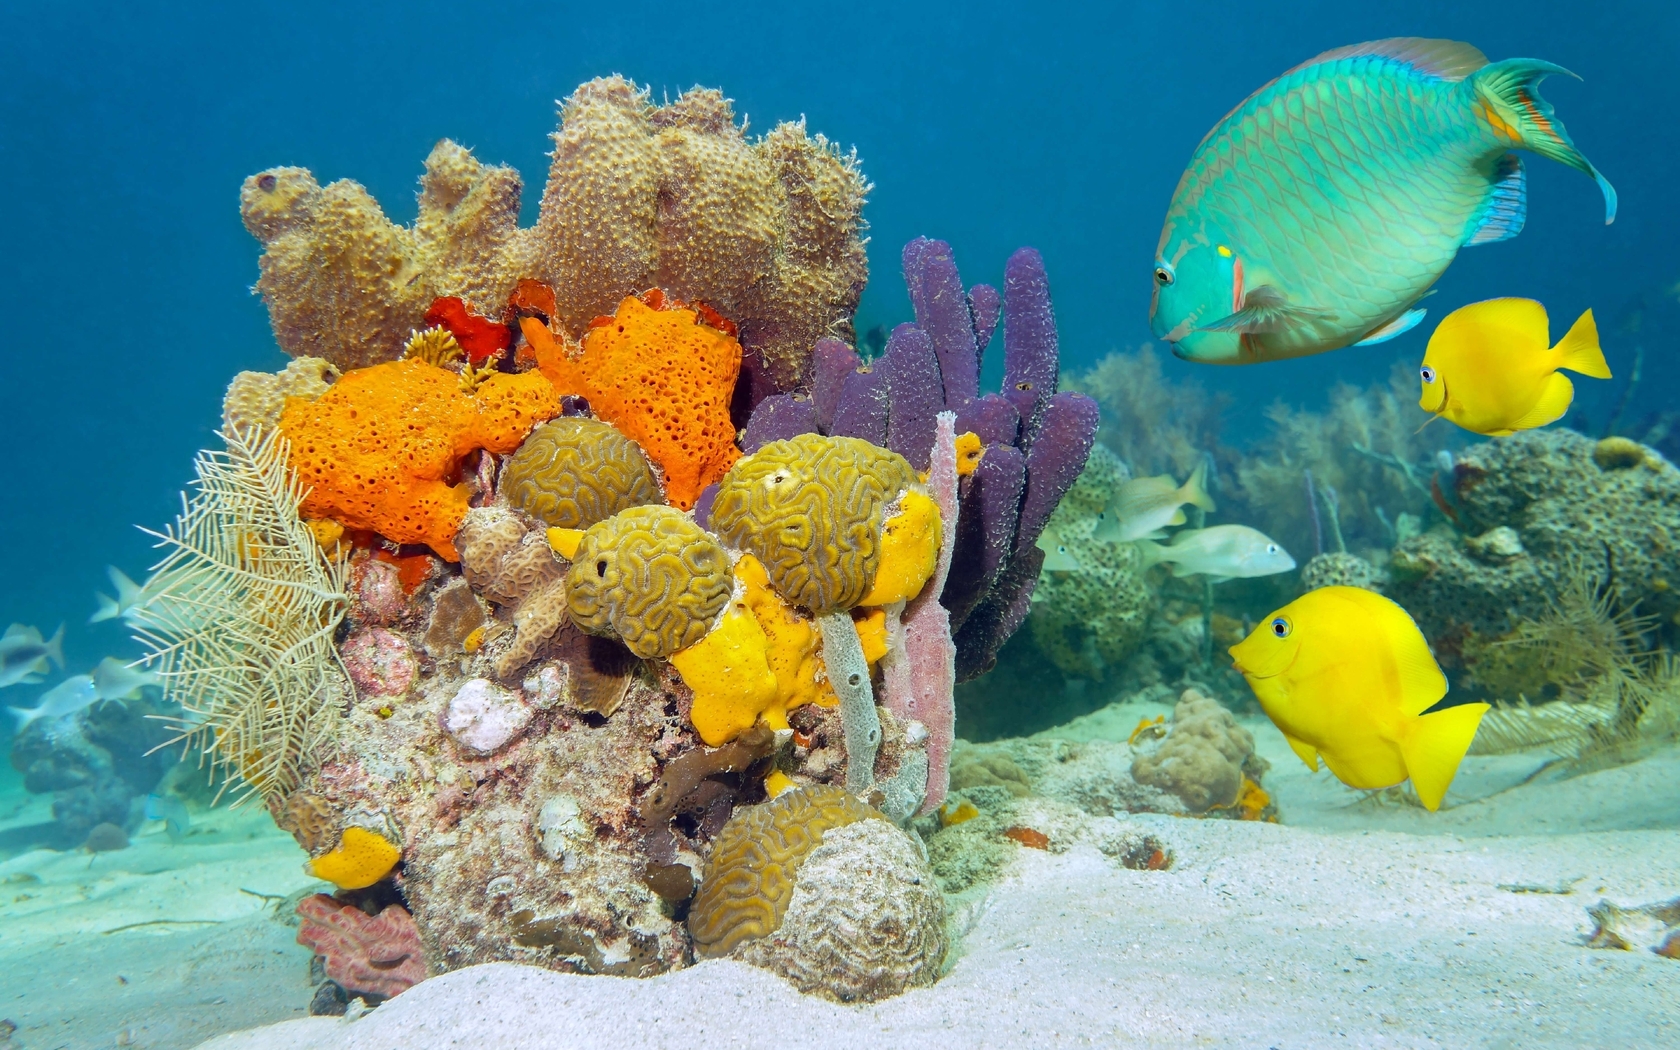 Картинка: Рыбы, кораллы, флора и фауна